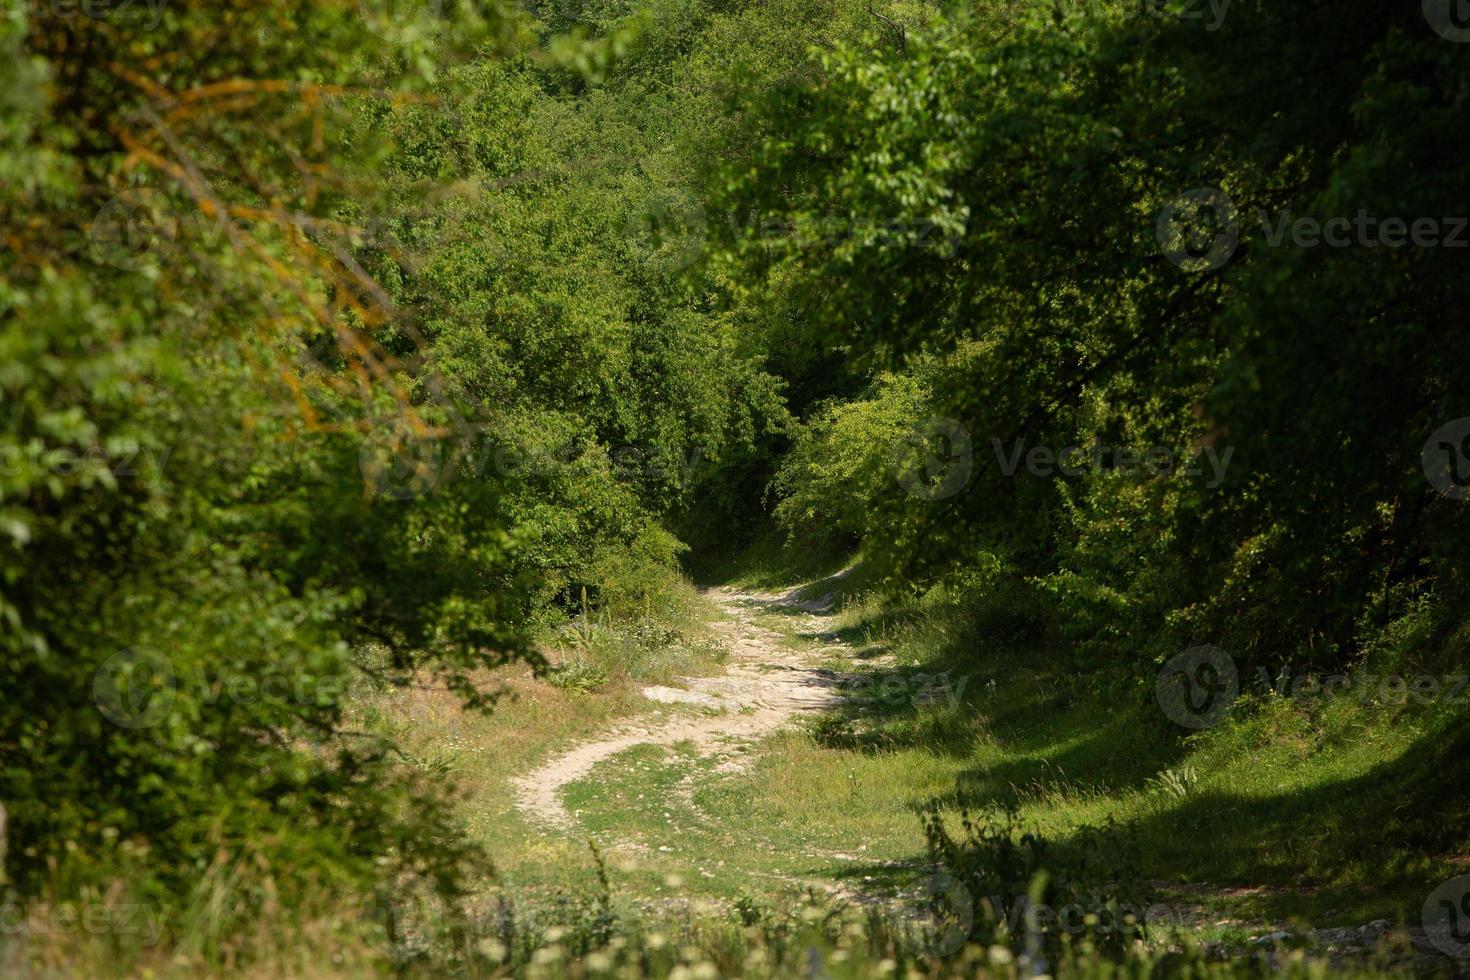 fotografie met prachtige natuur uit Moldavië in de zomer. landschap in europa. foto